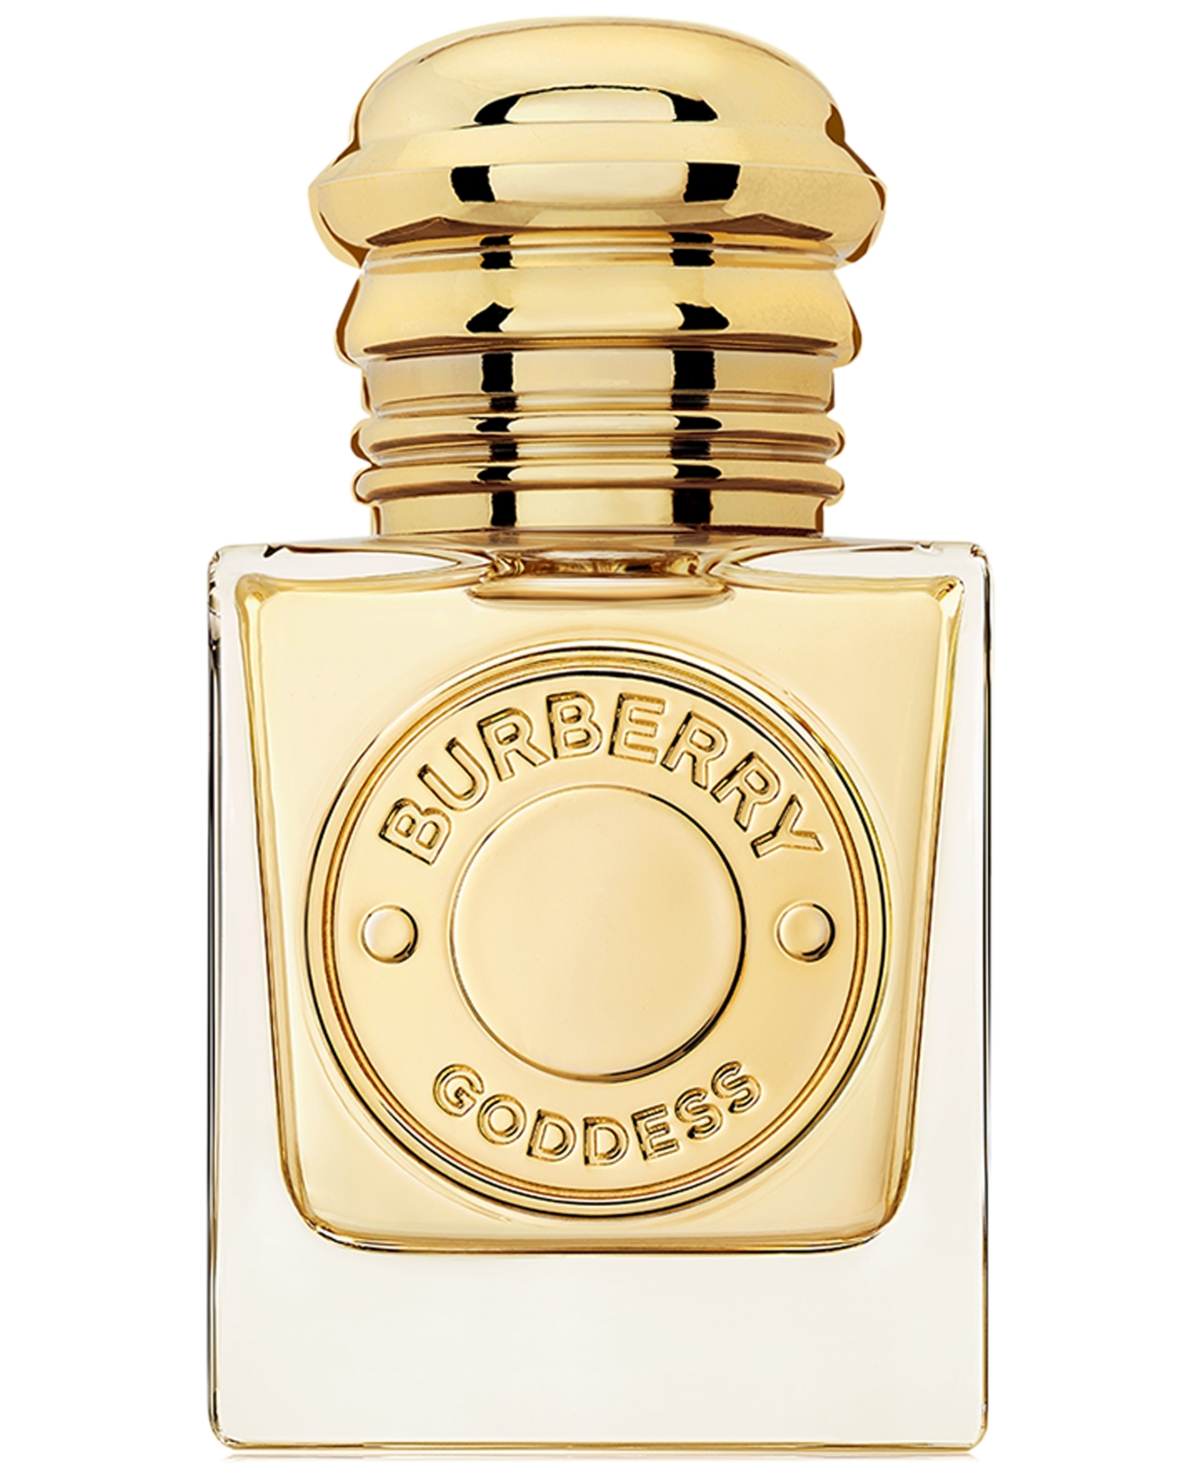 Burberry Goddess Eau de Parfum, 1 oz.